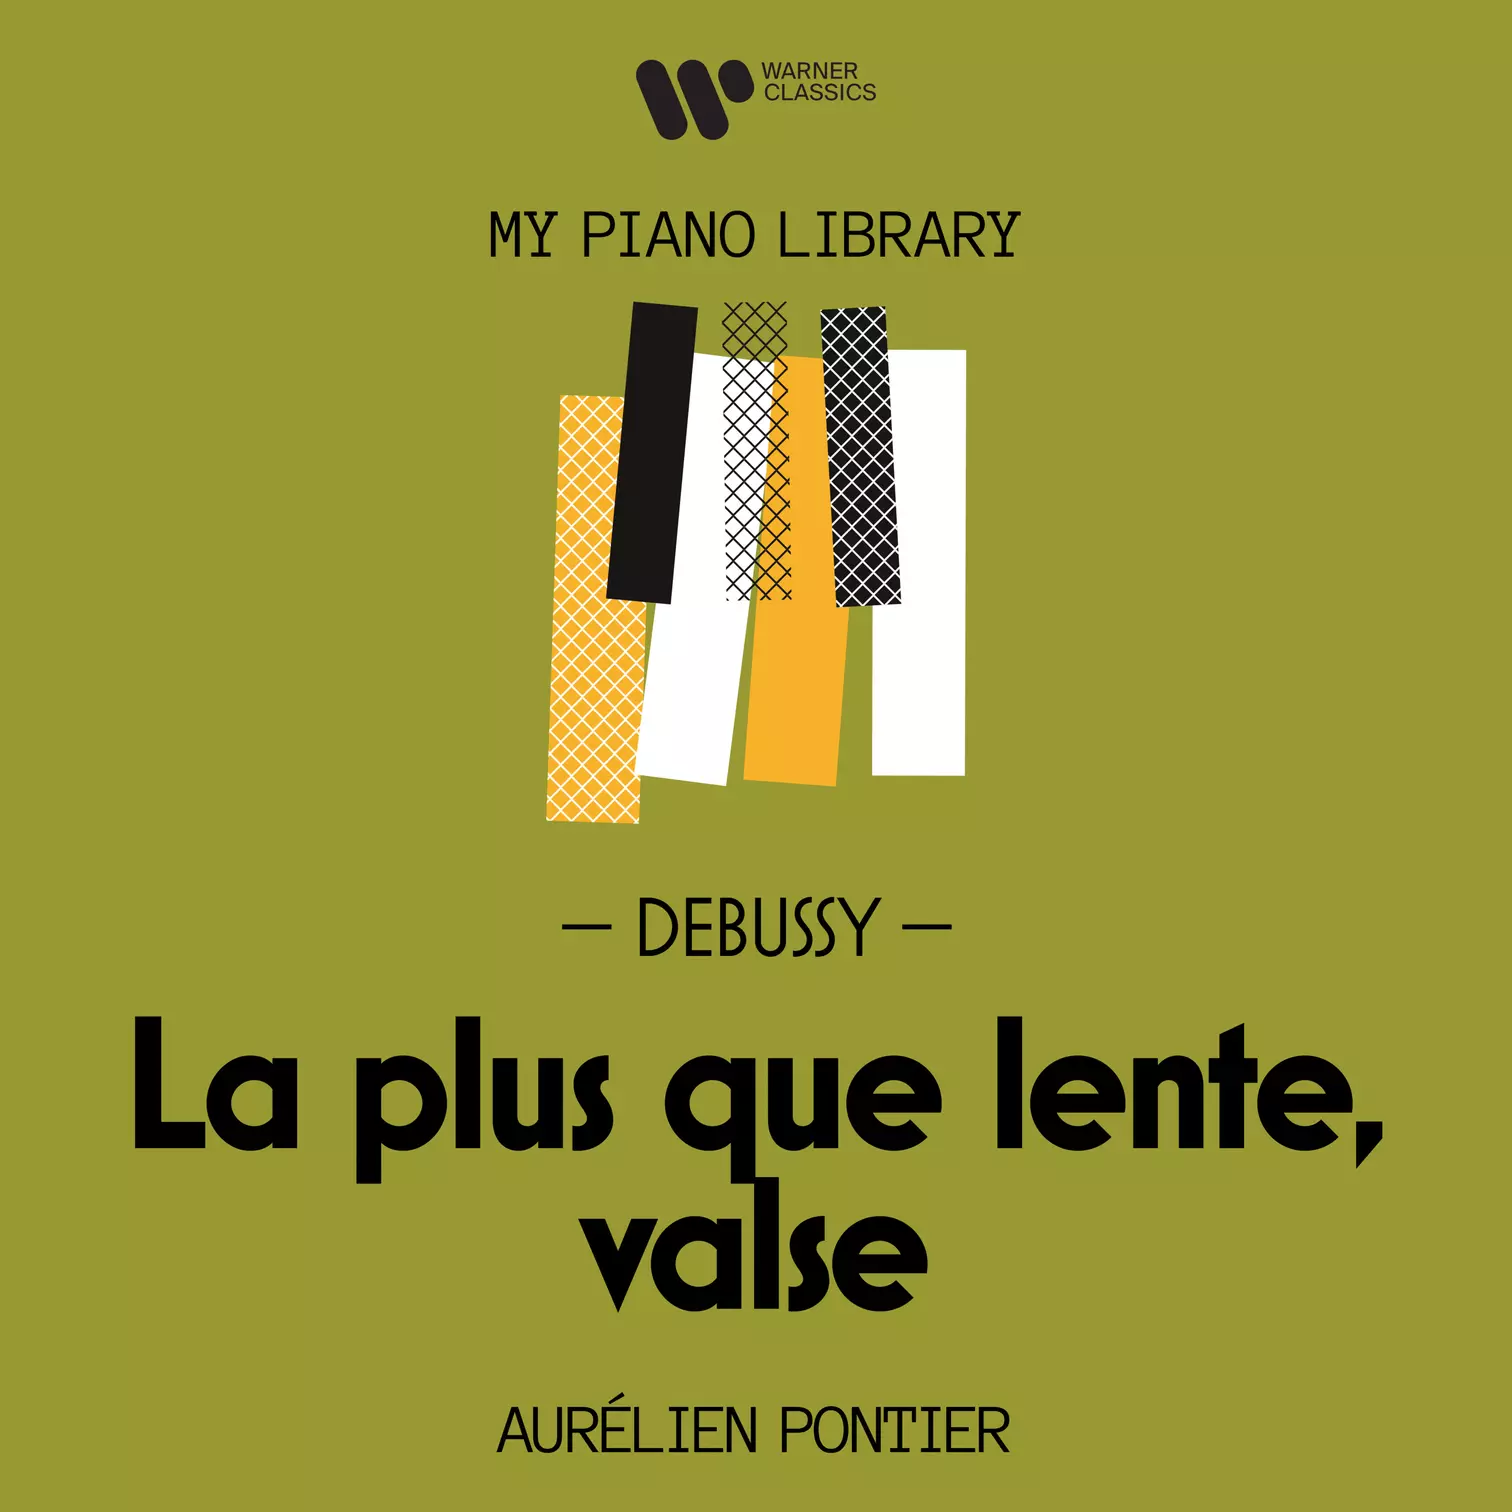 Aurélien Pontier - My Piano Library: Debussy,  La plus que lente, valse